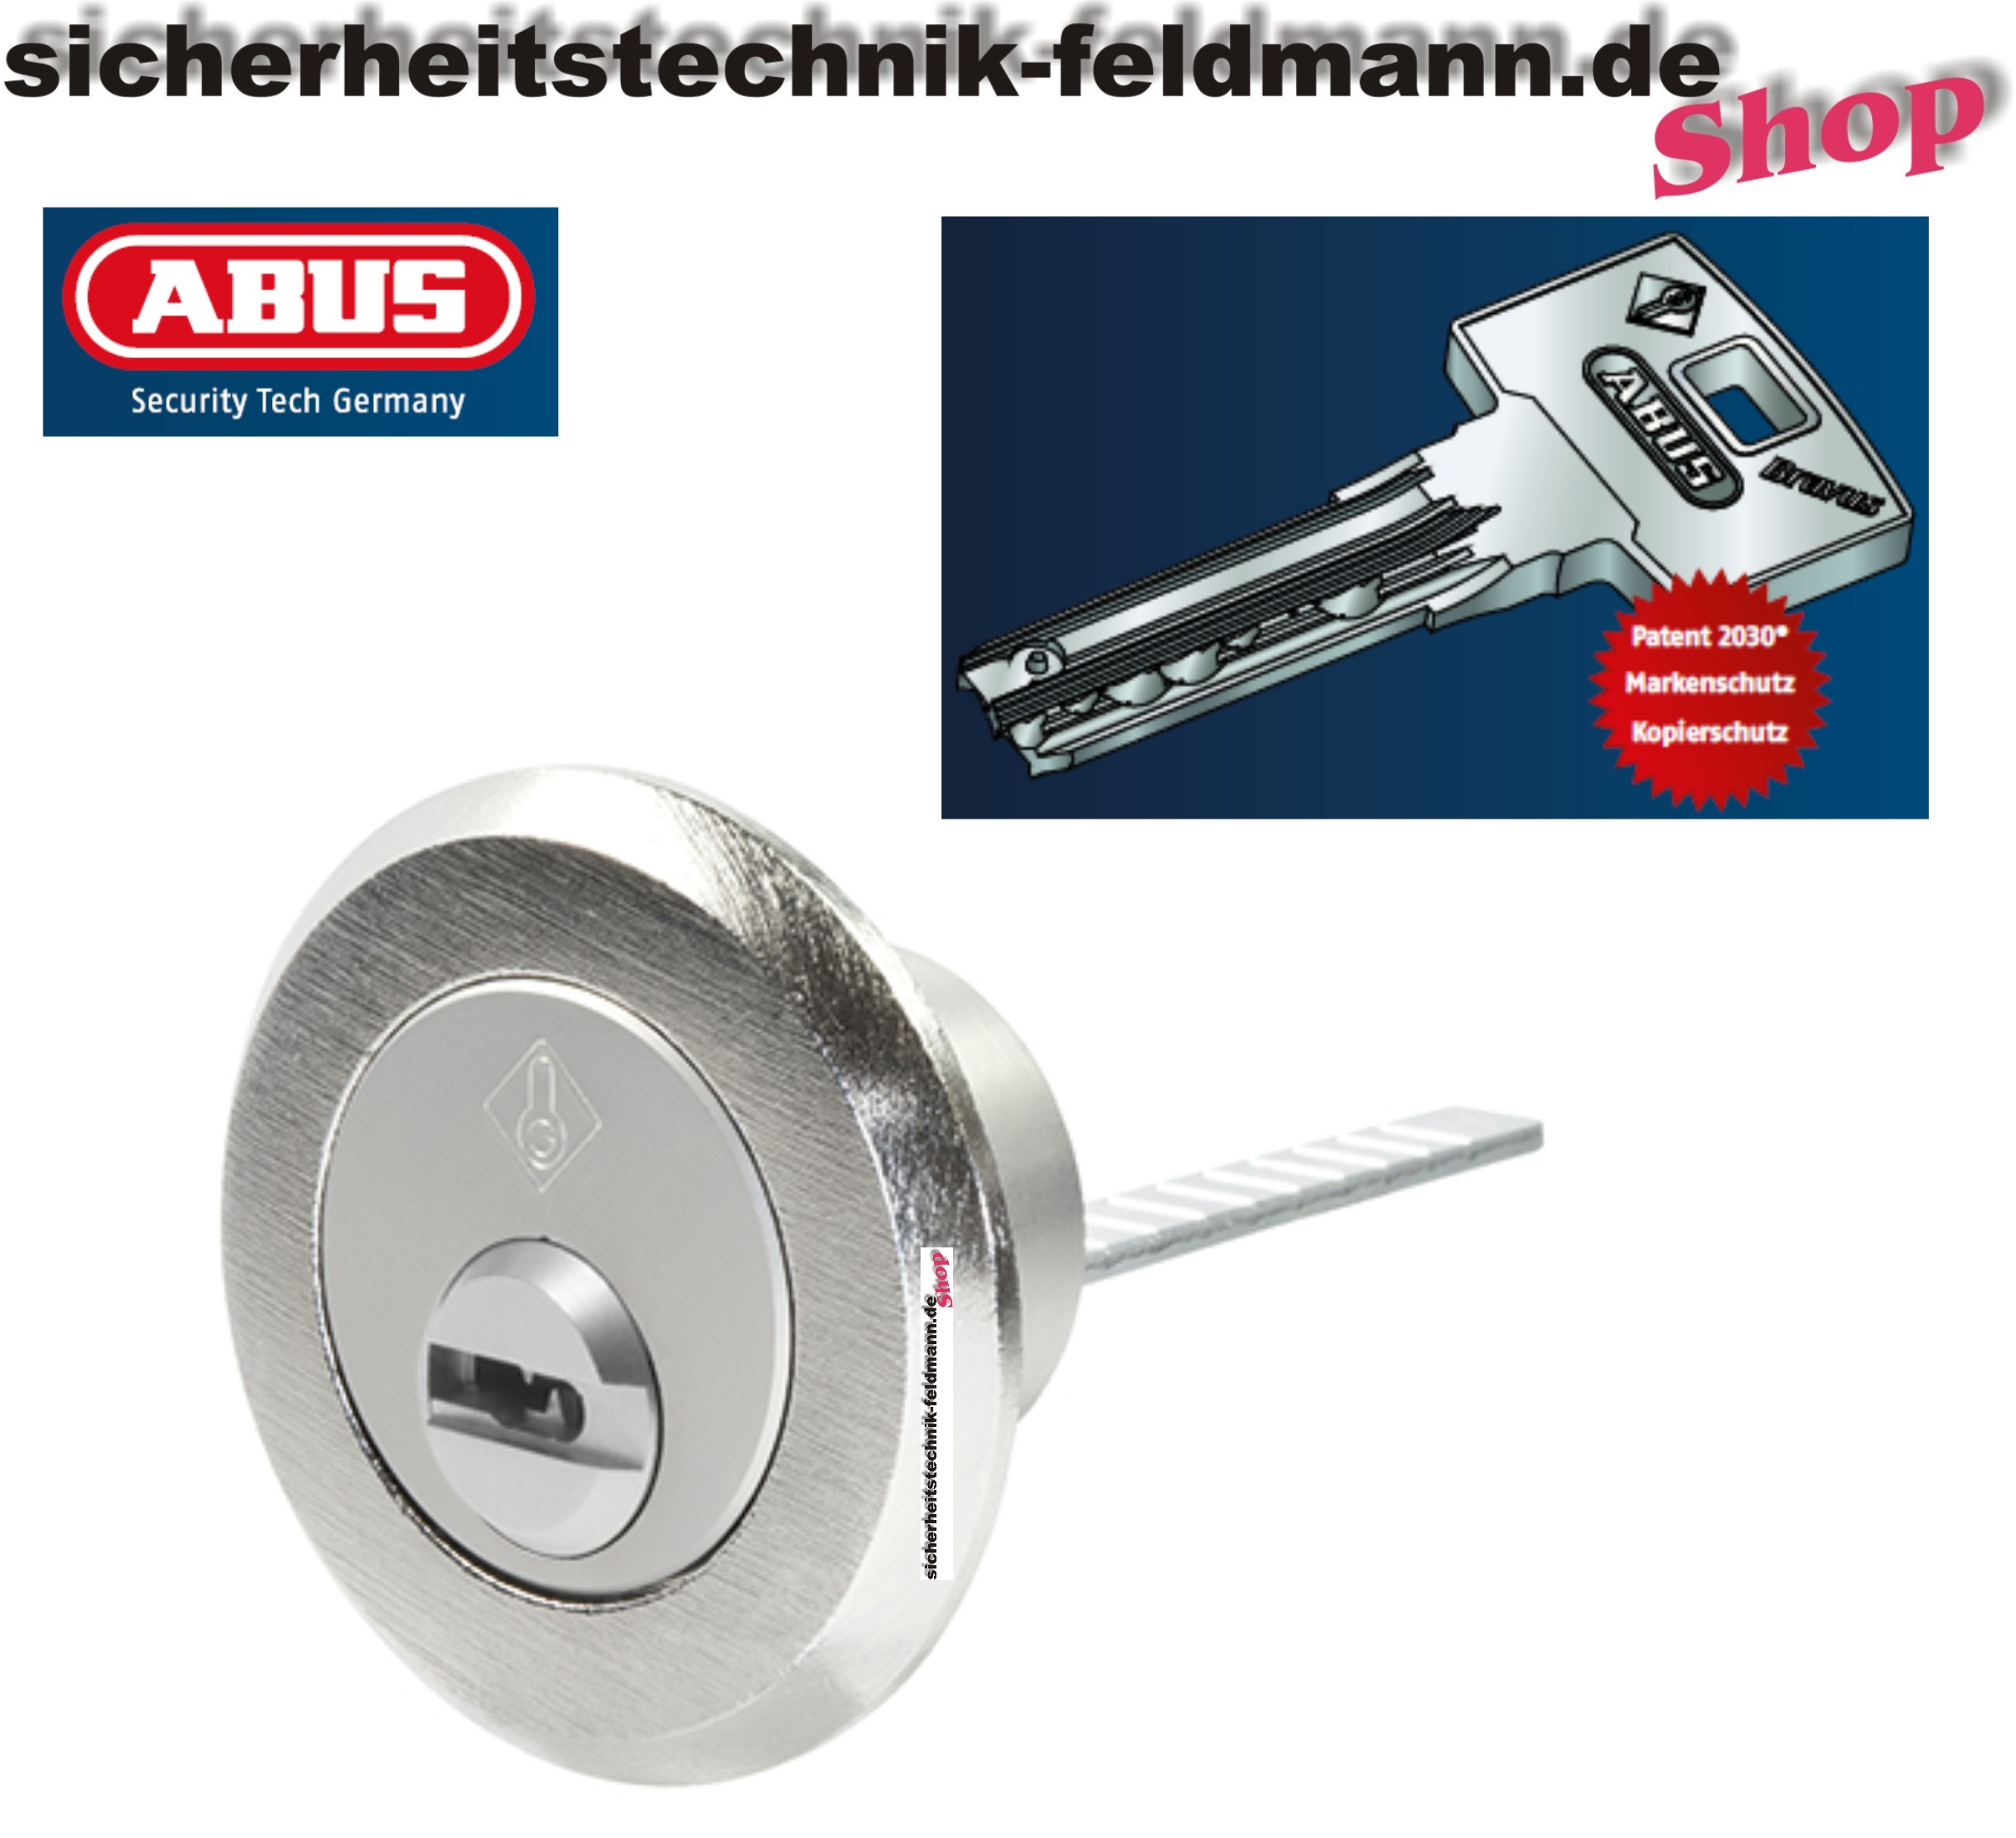 https://www.sicherheitstechnik-feldmann-shop.de/media/image/fe/8c/ec/456-A-Bravus-mit-Schl-ssel-1000-und-Logo.jpg